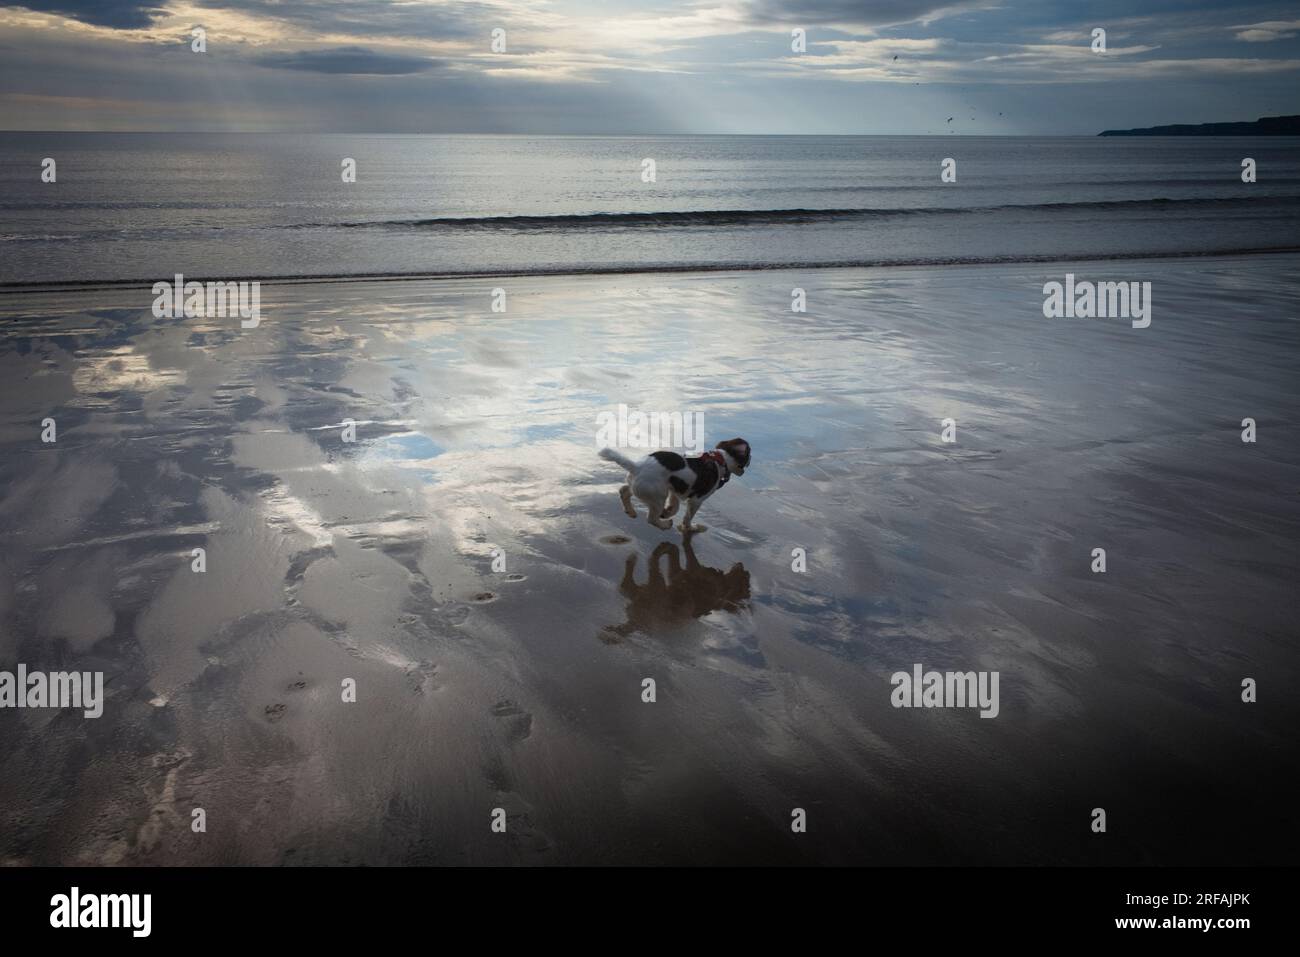 Springer spaniel cucciolo che corre sulla spiaggia con la bassa marea Foto Stock